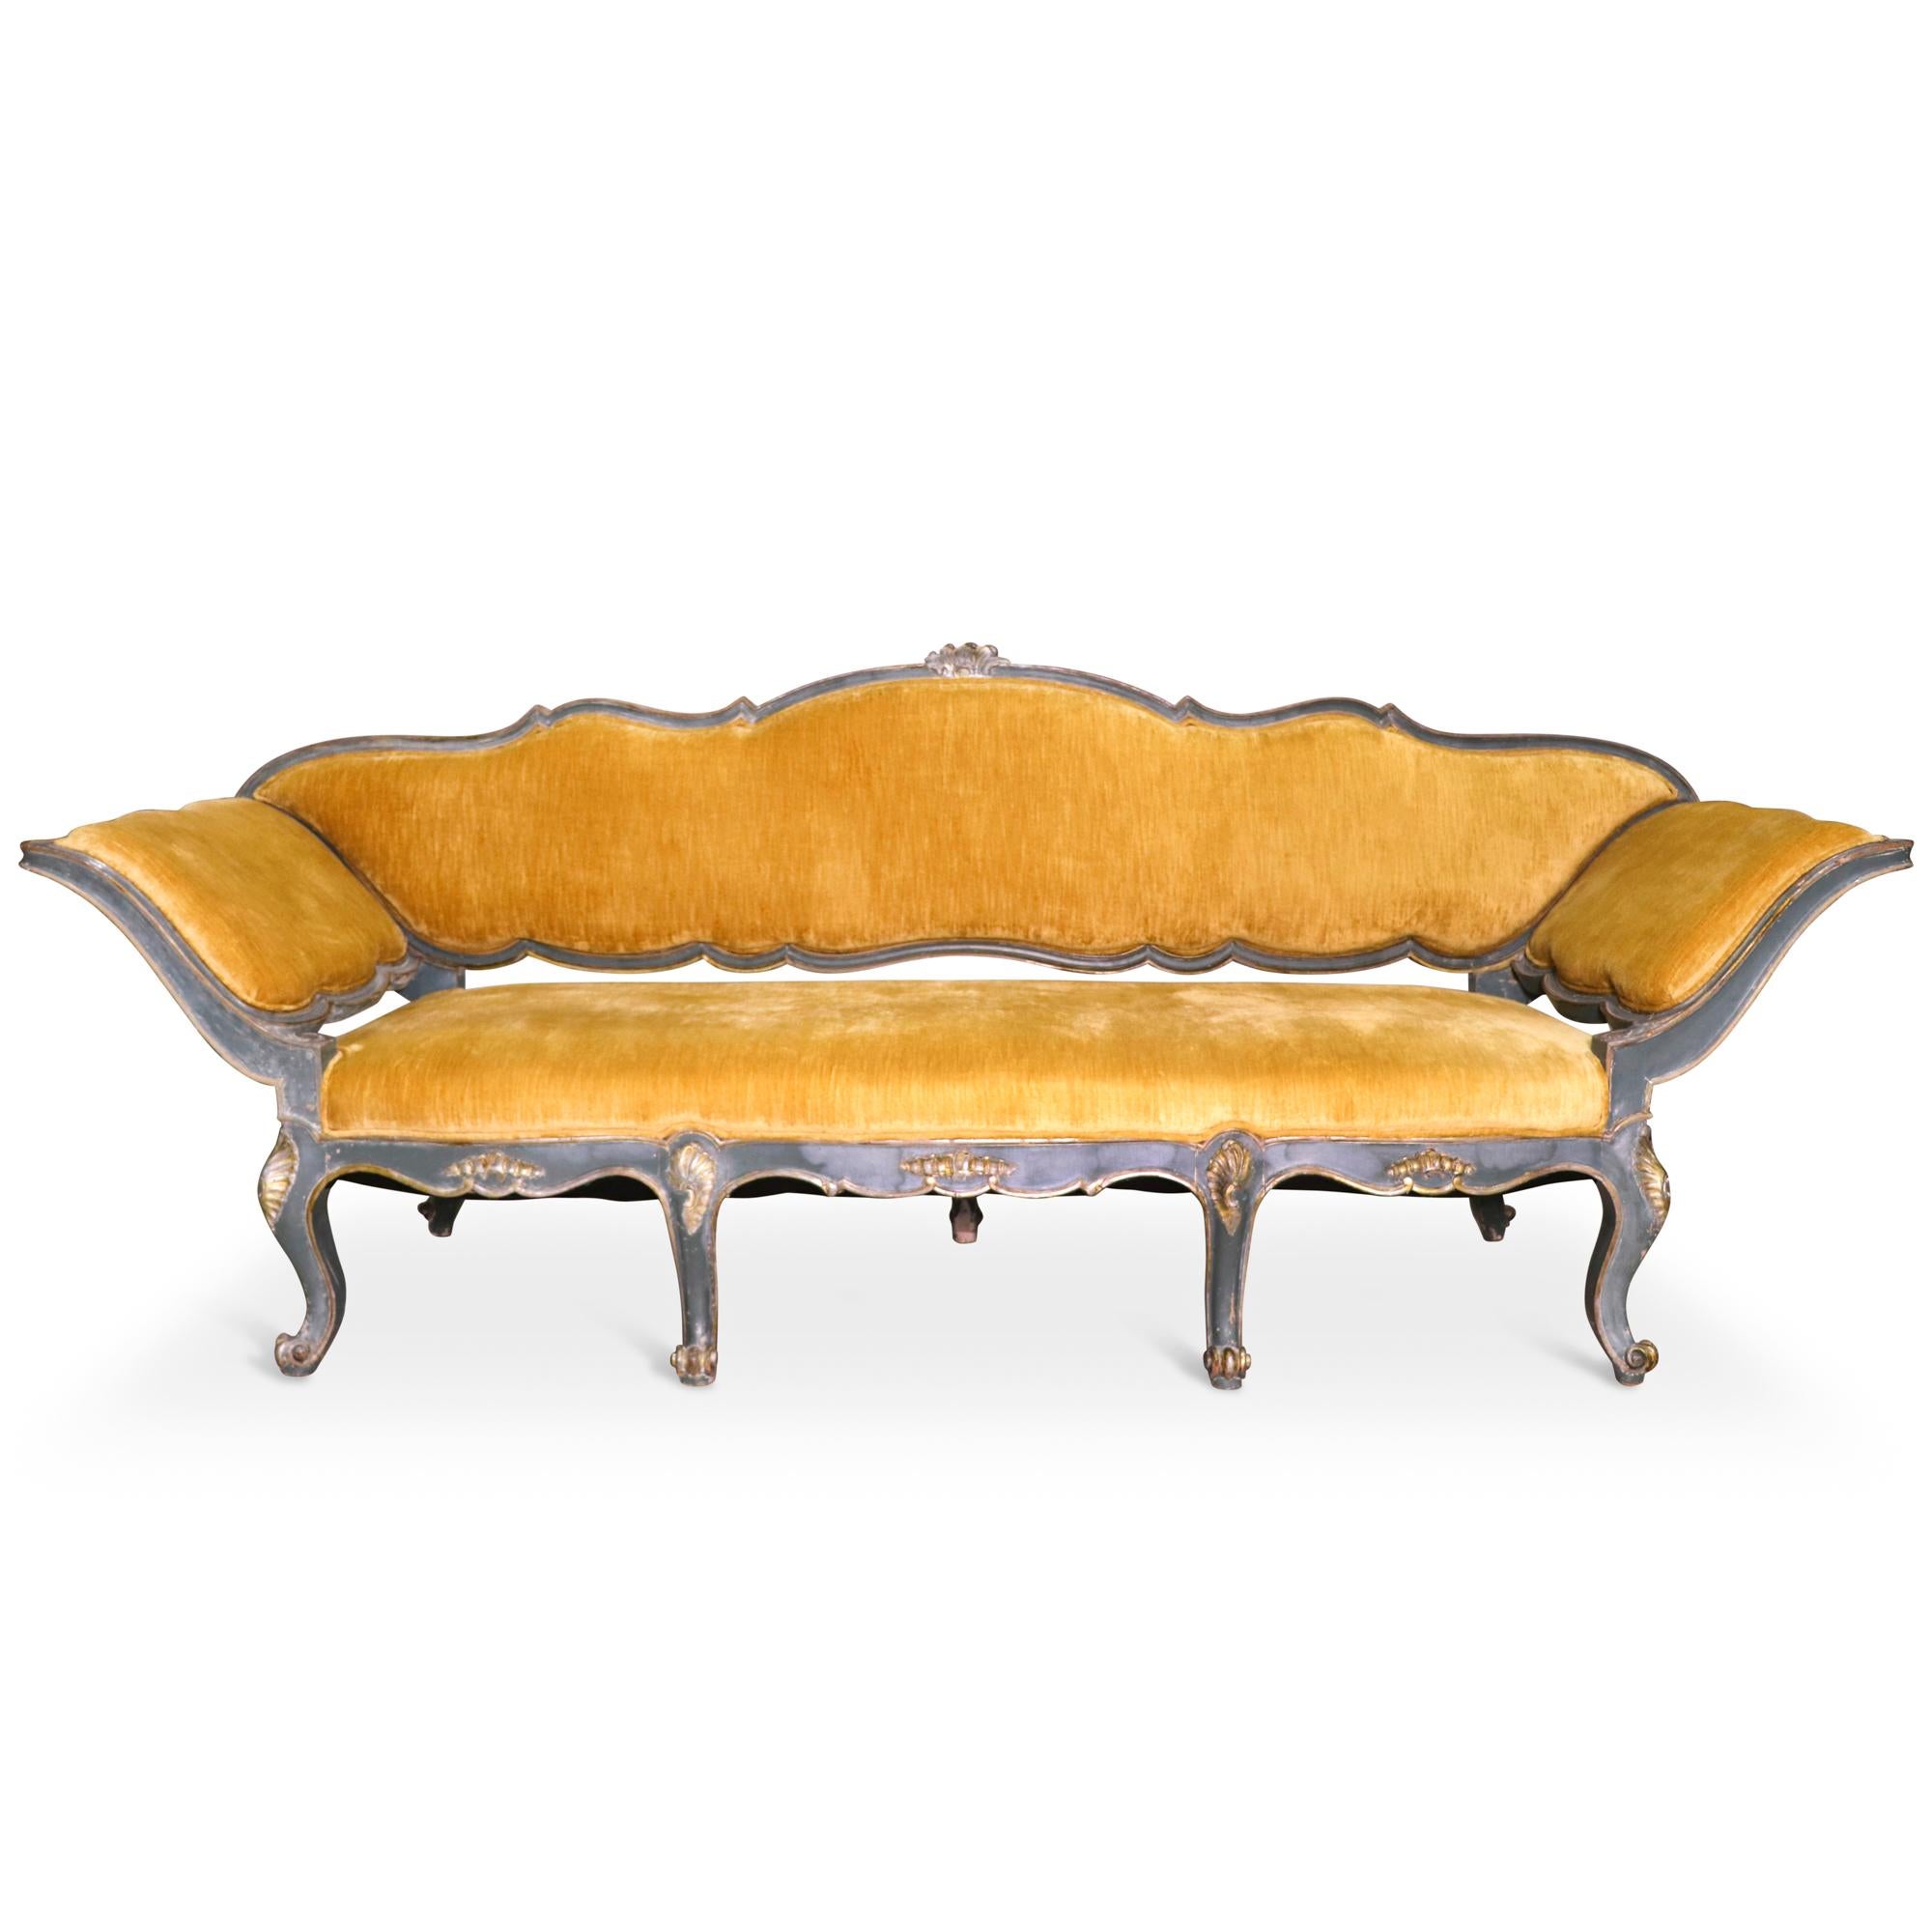 Ein Paar dreisitzige venezianische Canape-Sofas aus dem frühen 19. Jahrhundert, die gemeinhin auch als Fächersofas bezeichnet werden. Die Gestelle sind aus Holz geschnitzt, mit serpentinenförmig gepolsterten Rückenlehnen und Sitzen, die in einem